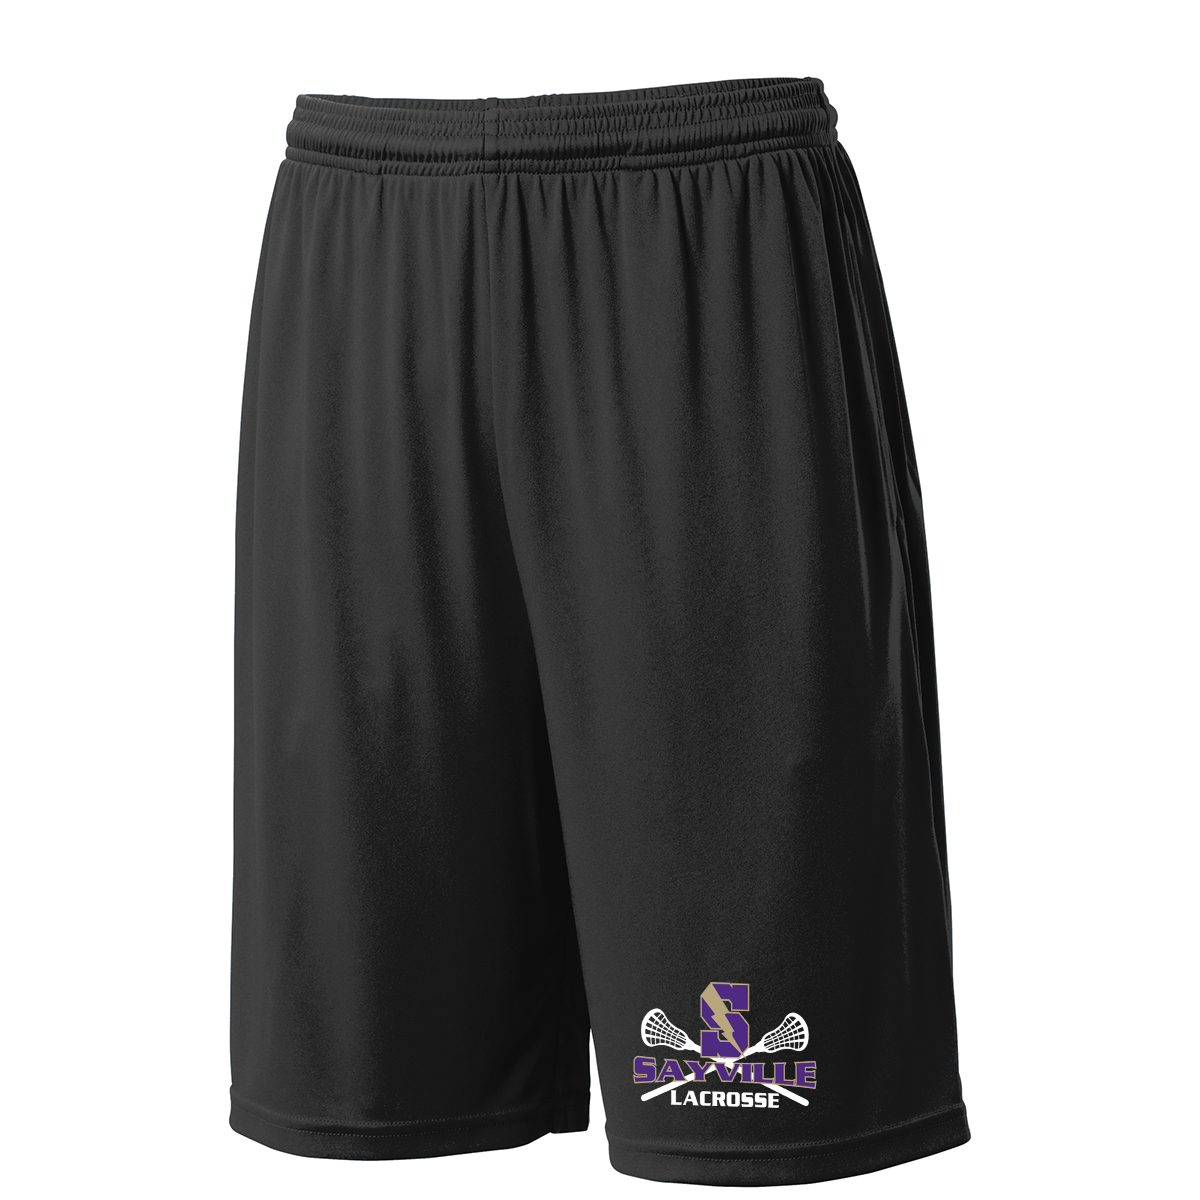 Sayville Lacrosse Shorts